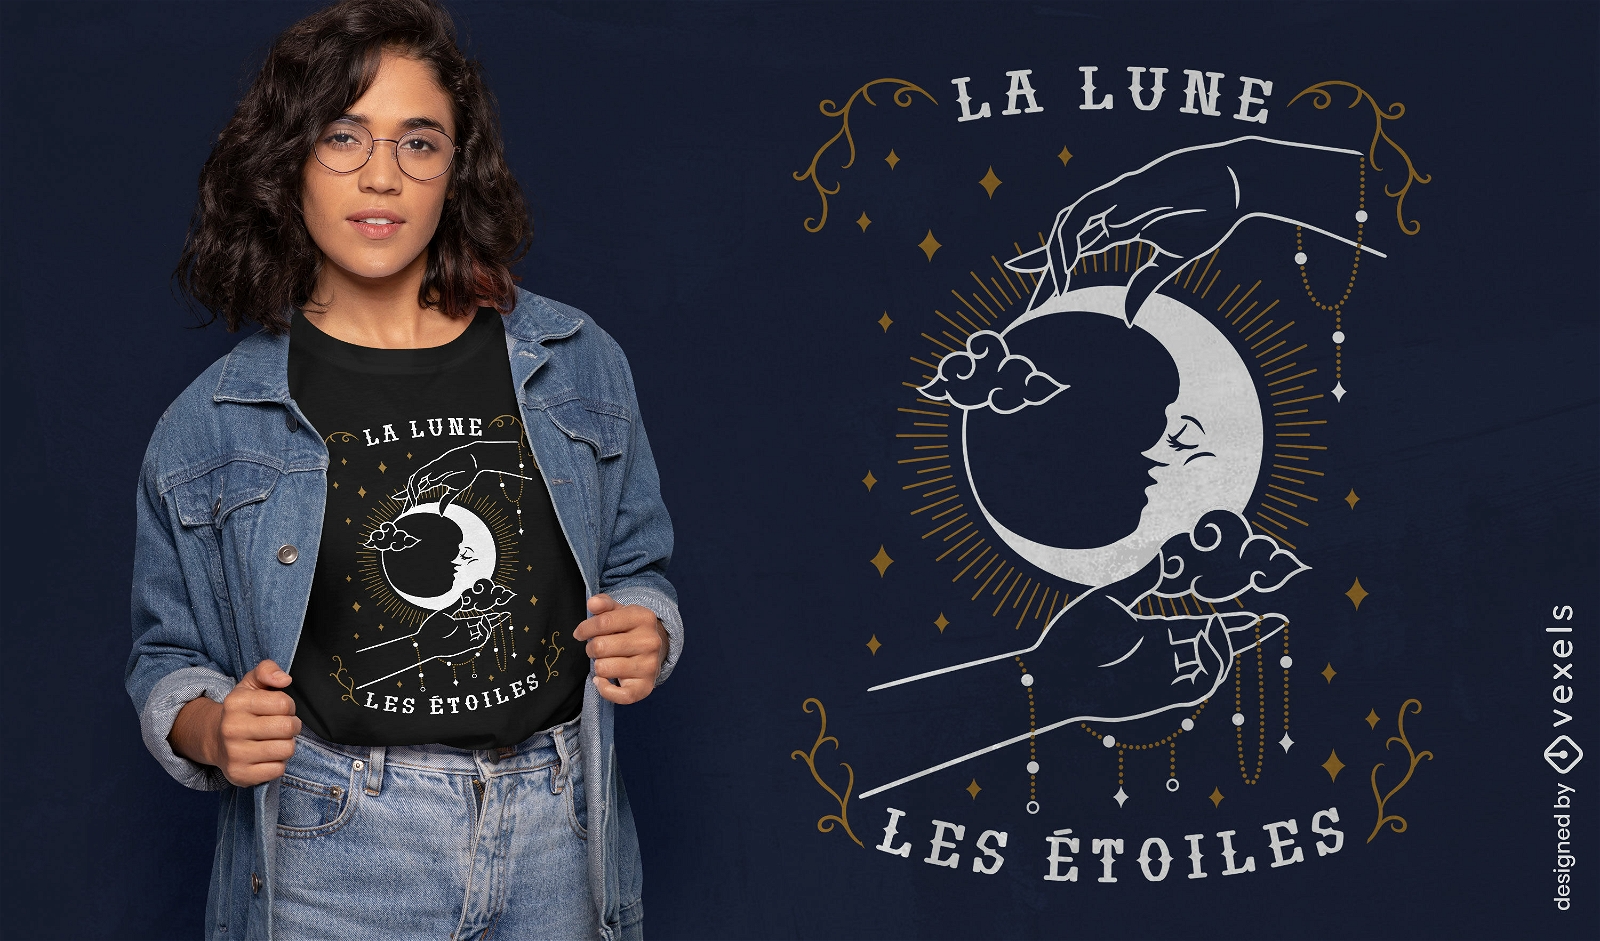 La luna las estrellas Dise?o de camiseta esot?rica francesa.